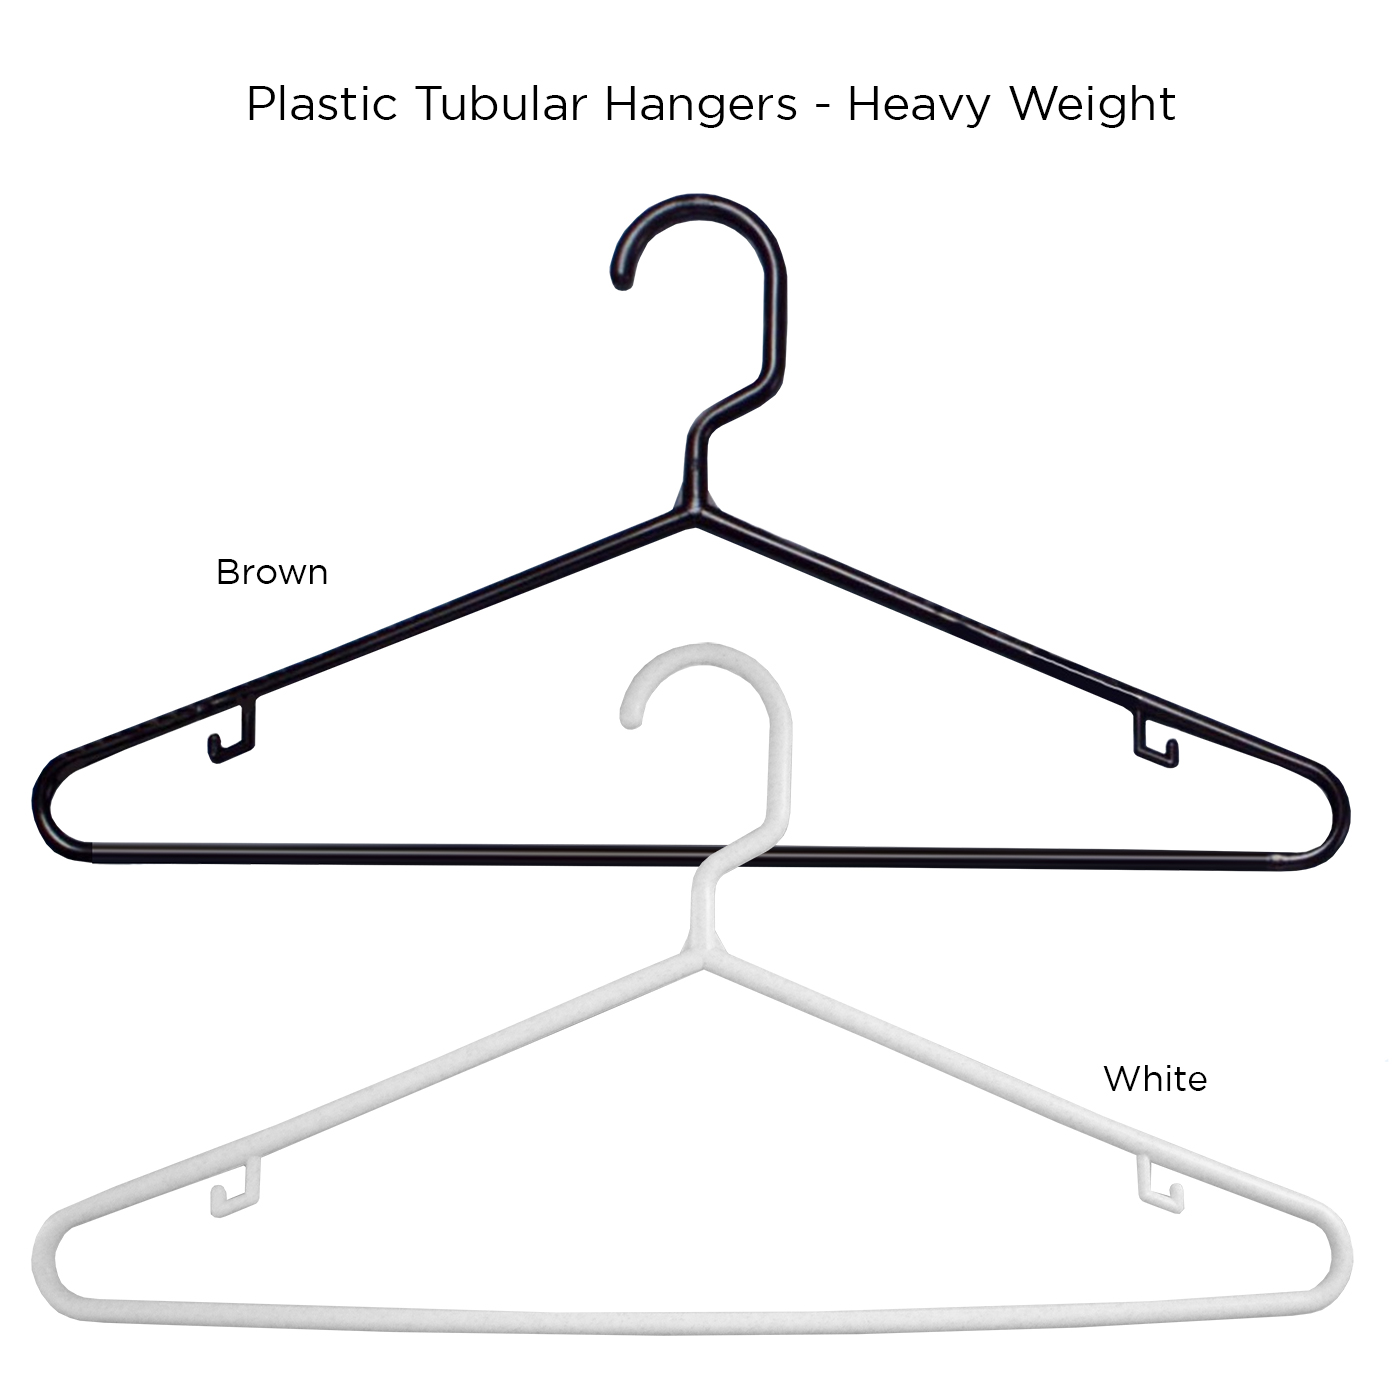 https://www.lodgingsupply.com/wp-content/uploads/2020/11/Plastic-Tubular-Hangers.jpg